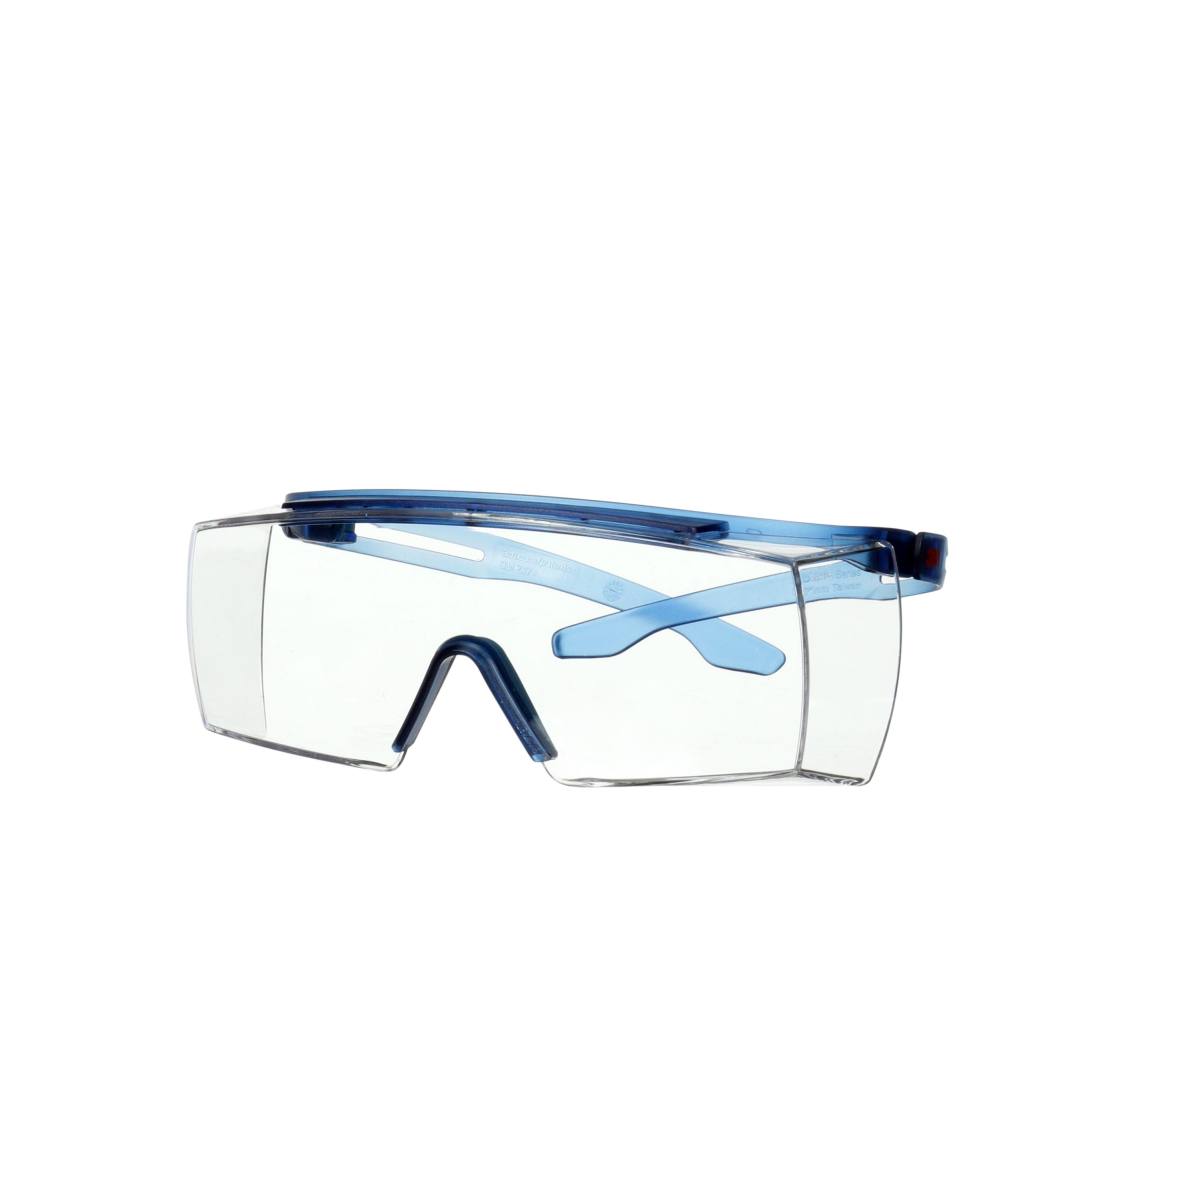 3M SecureFit 3700 Überbrille, blaue Bügel, Scotchgard Anti-Beschlag Beschichtung (K&N), transparente Scheibe, winkelverstellbar, SF3701SGAF-BLU-EU